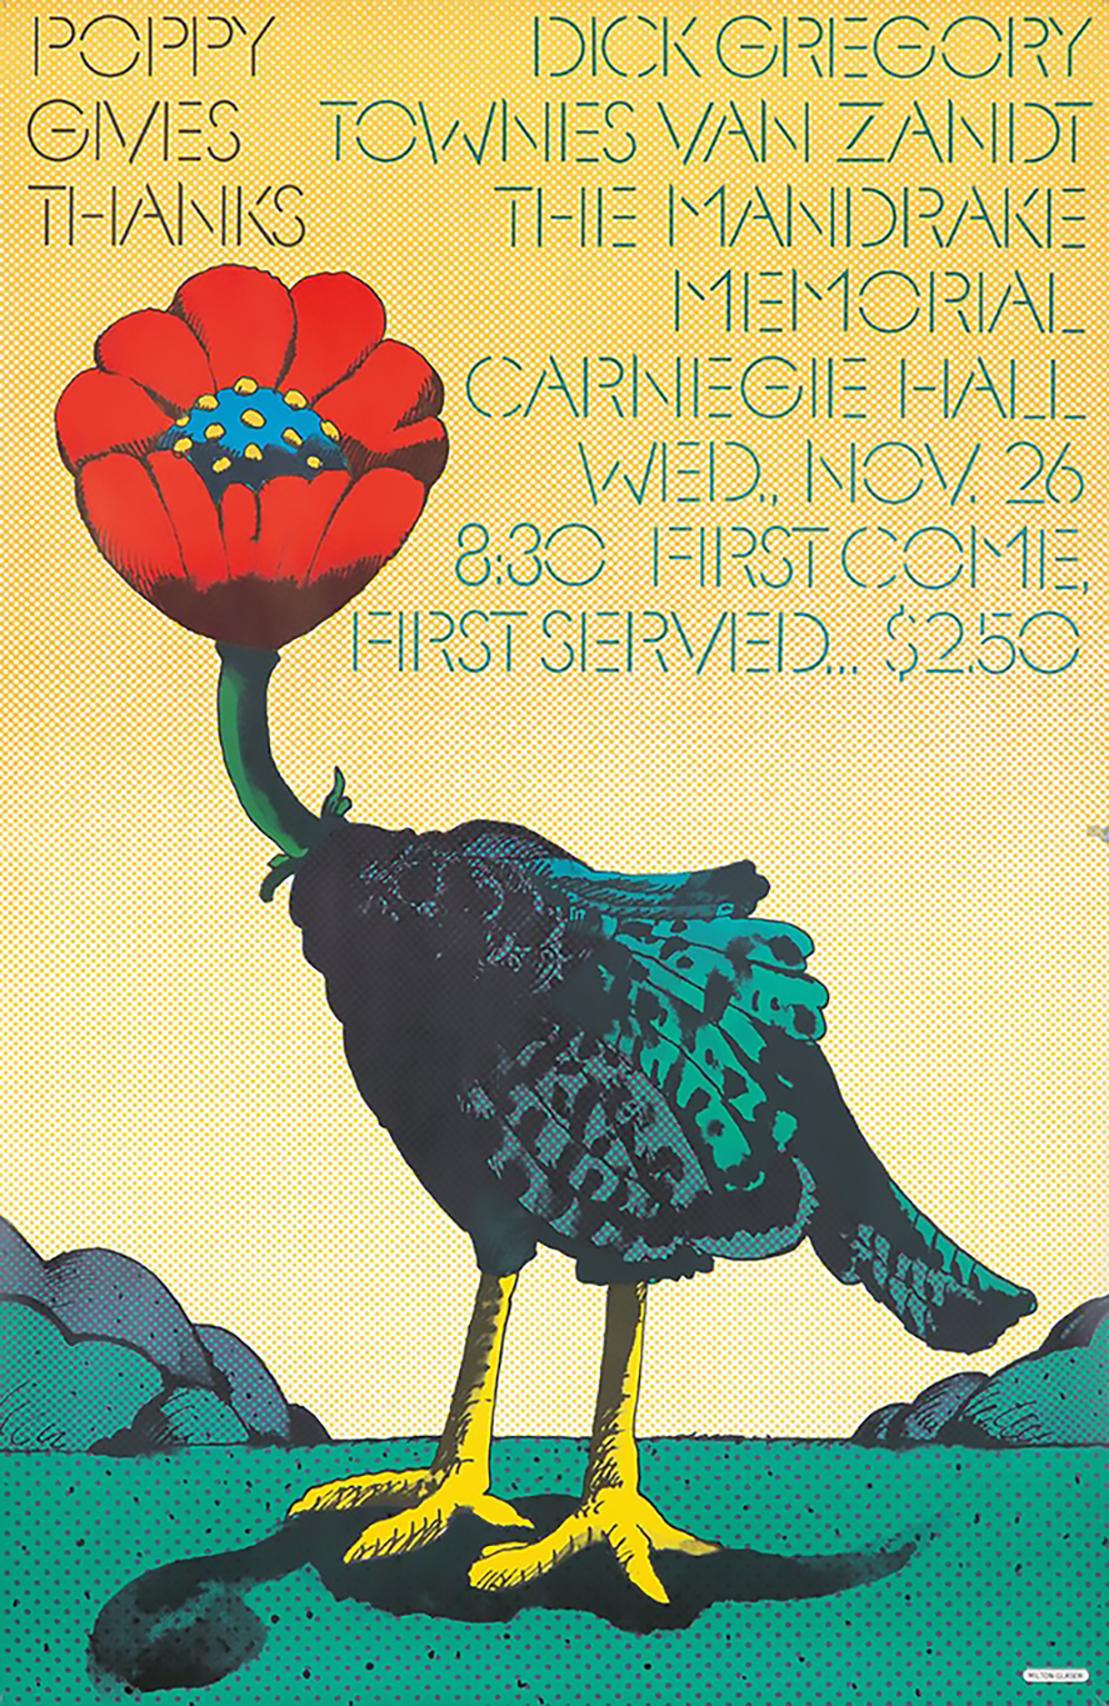 Poster d'art Milton Glaser des années 1960 : 
Milton Glaser Poppy Gives Thanks : Affiche originale de Milton Glaser datant de 1968. Conçu par Milton Glaser à l'occasion d'un concert au Carnegie Hall de New York avec des artistes de musique pop